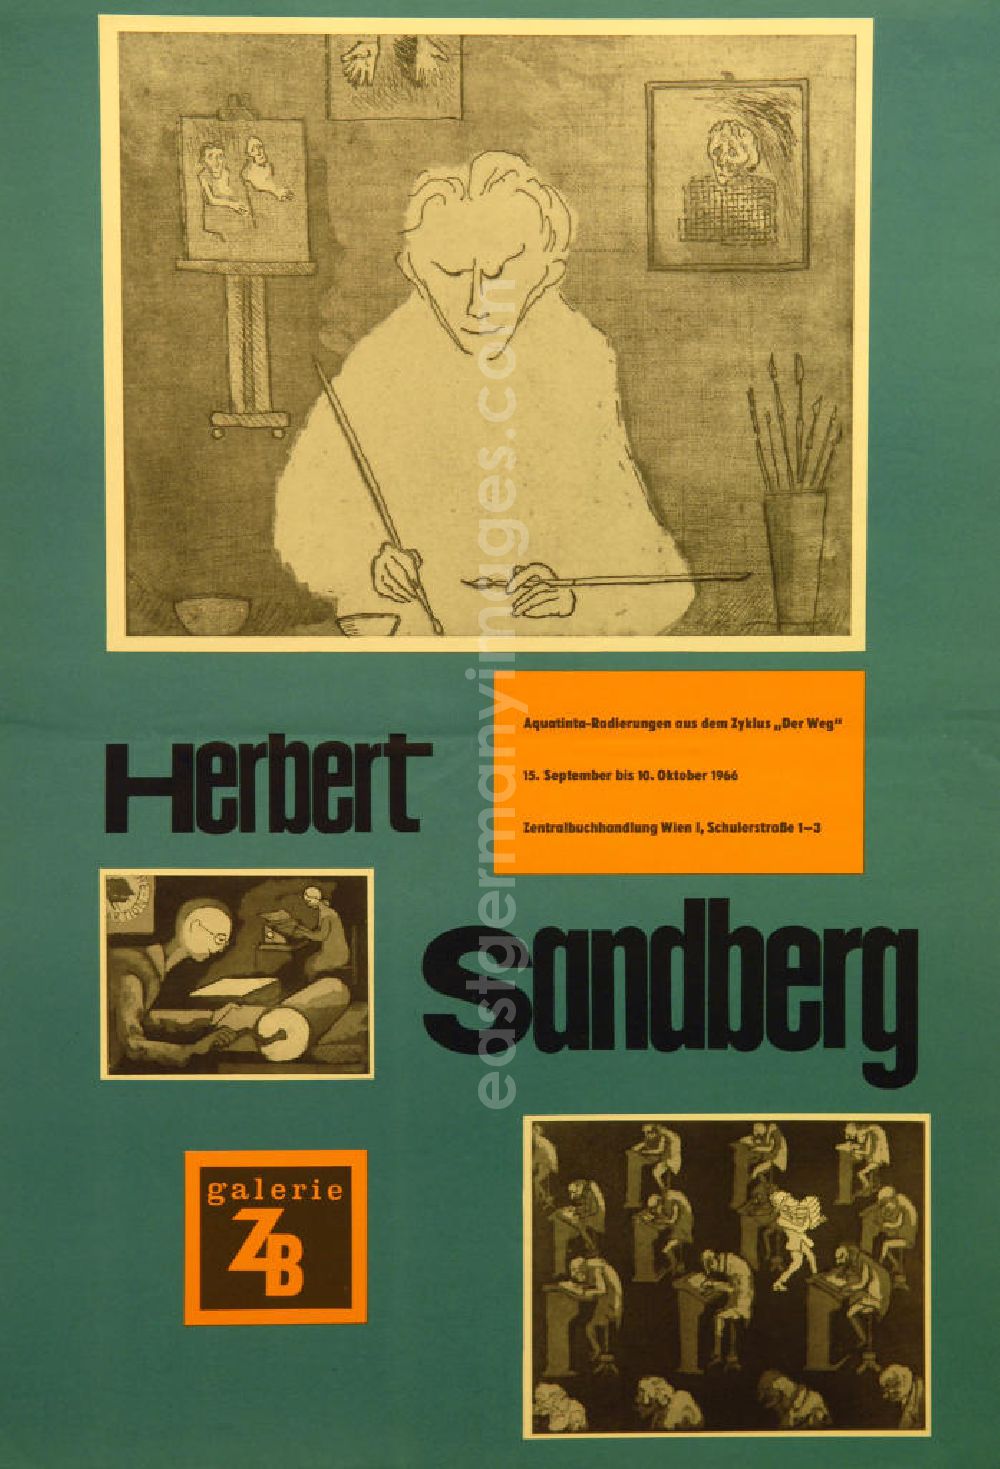 GDR image archive: Berlin - Plakat der Ausstellung Der Weg über Herbert Sandberg vom 15.09.-10.10.1966, 41,